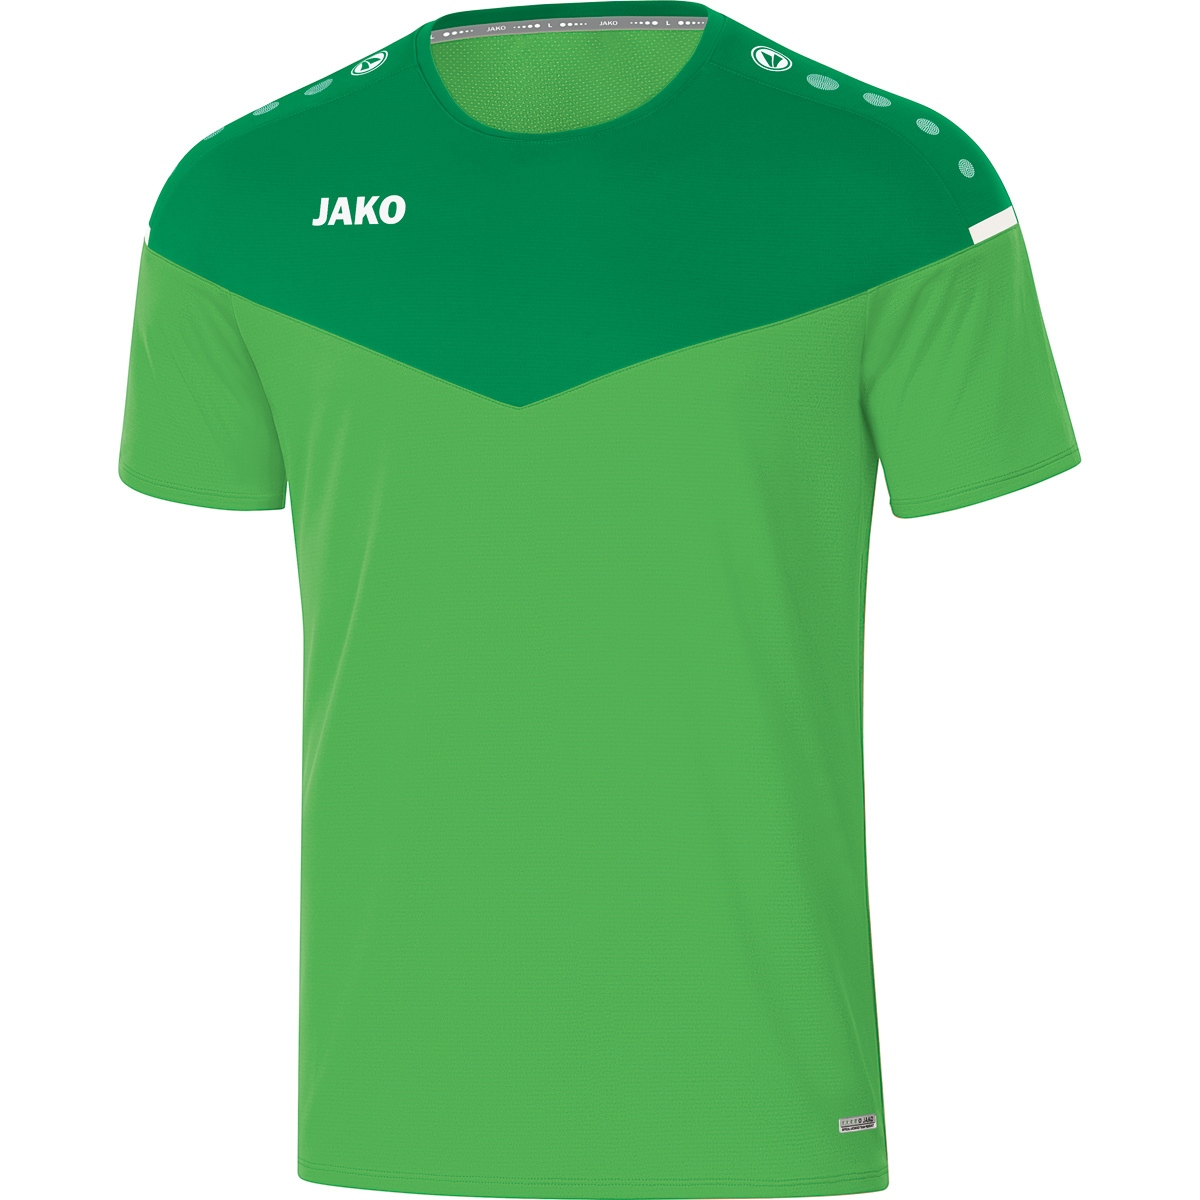 Herren, soft Gr. green/sportgrün, 2.0 XXL, T-Shirt JAKO 6120 Champ